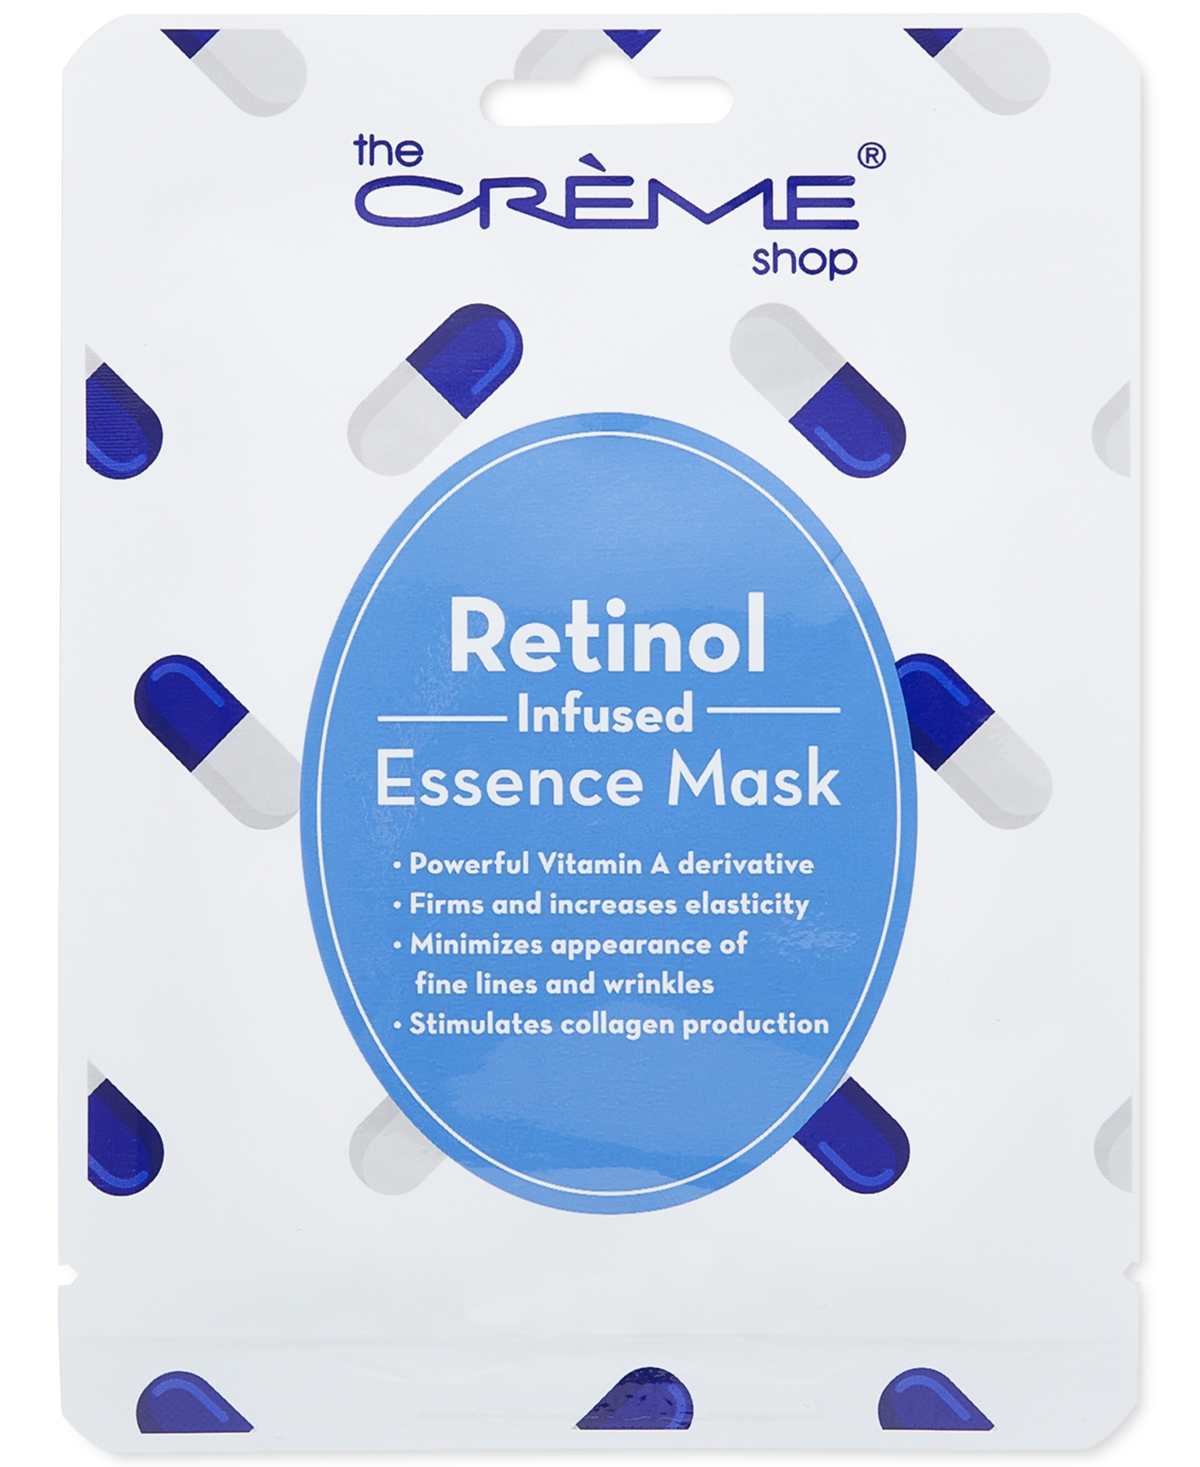 Retinol Infused Essence Mask